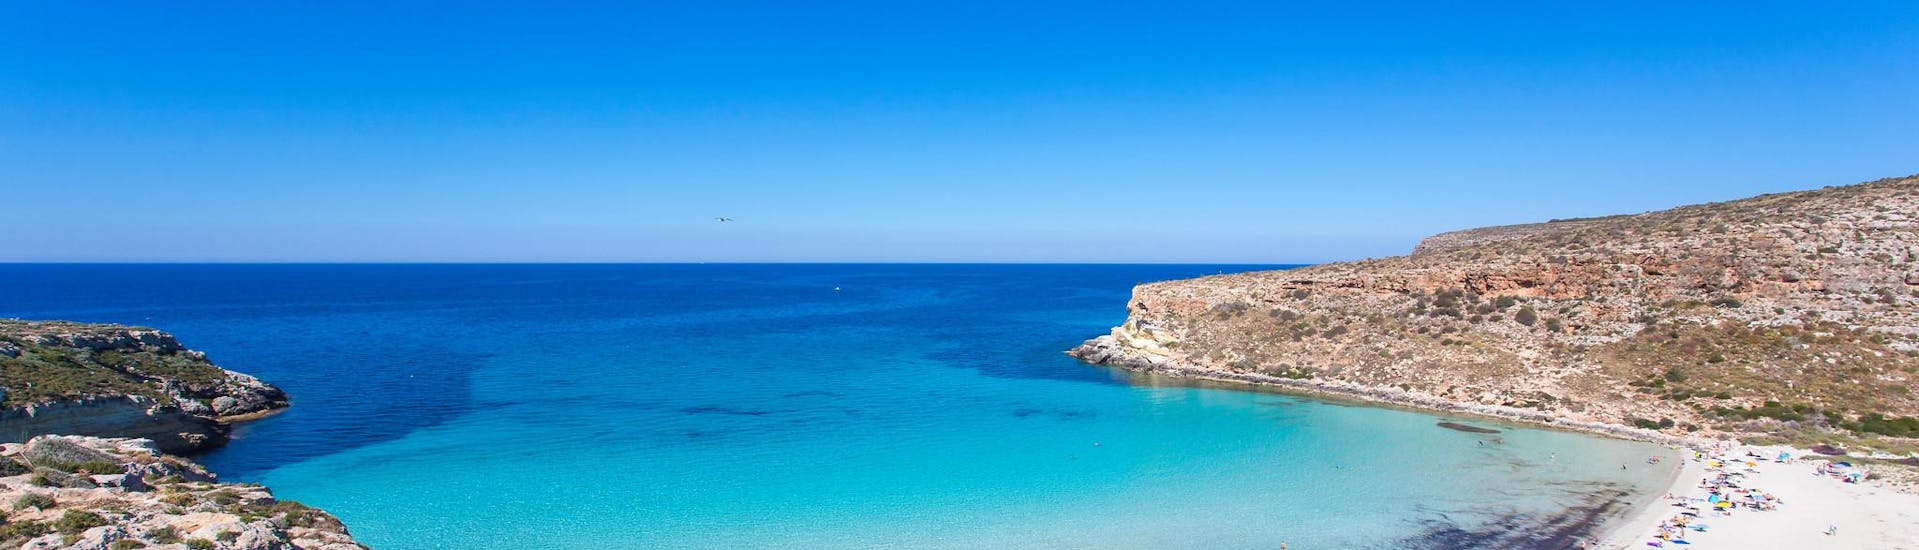 Una de las playas más bellas y famosas de Marsala, en Sicilia.